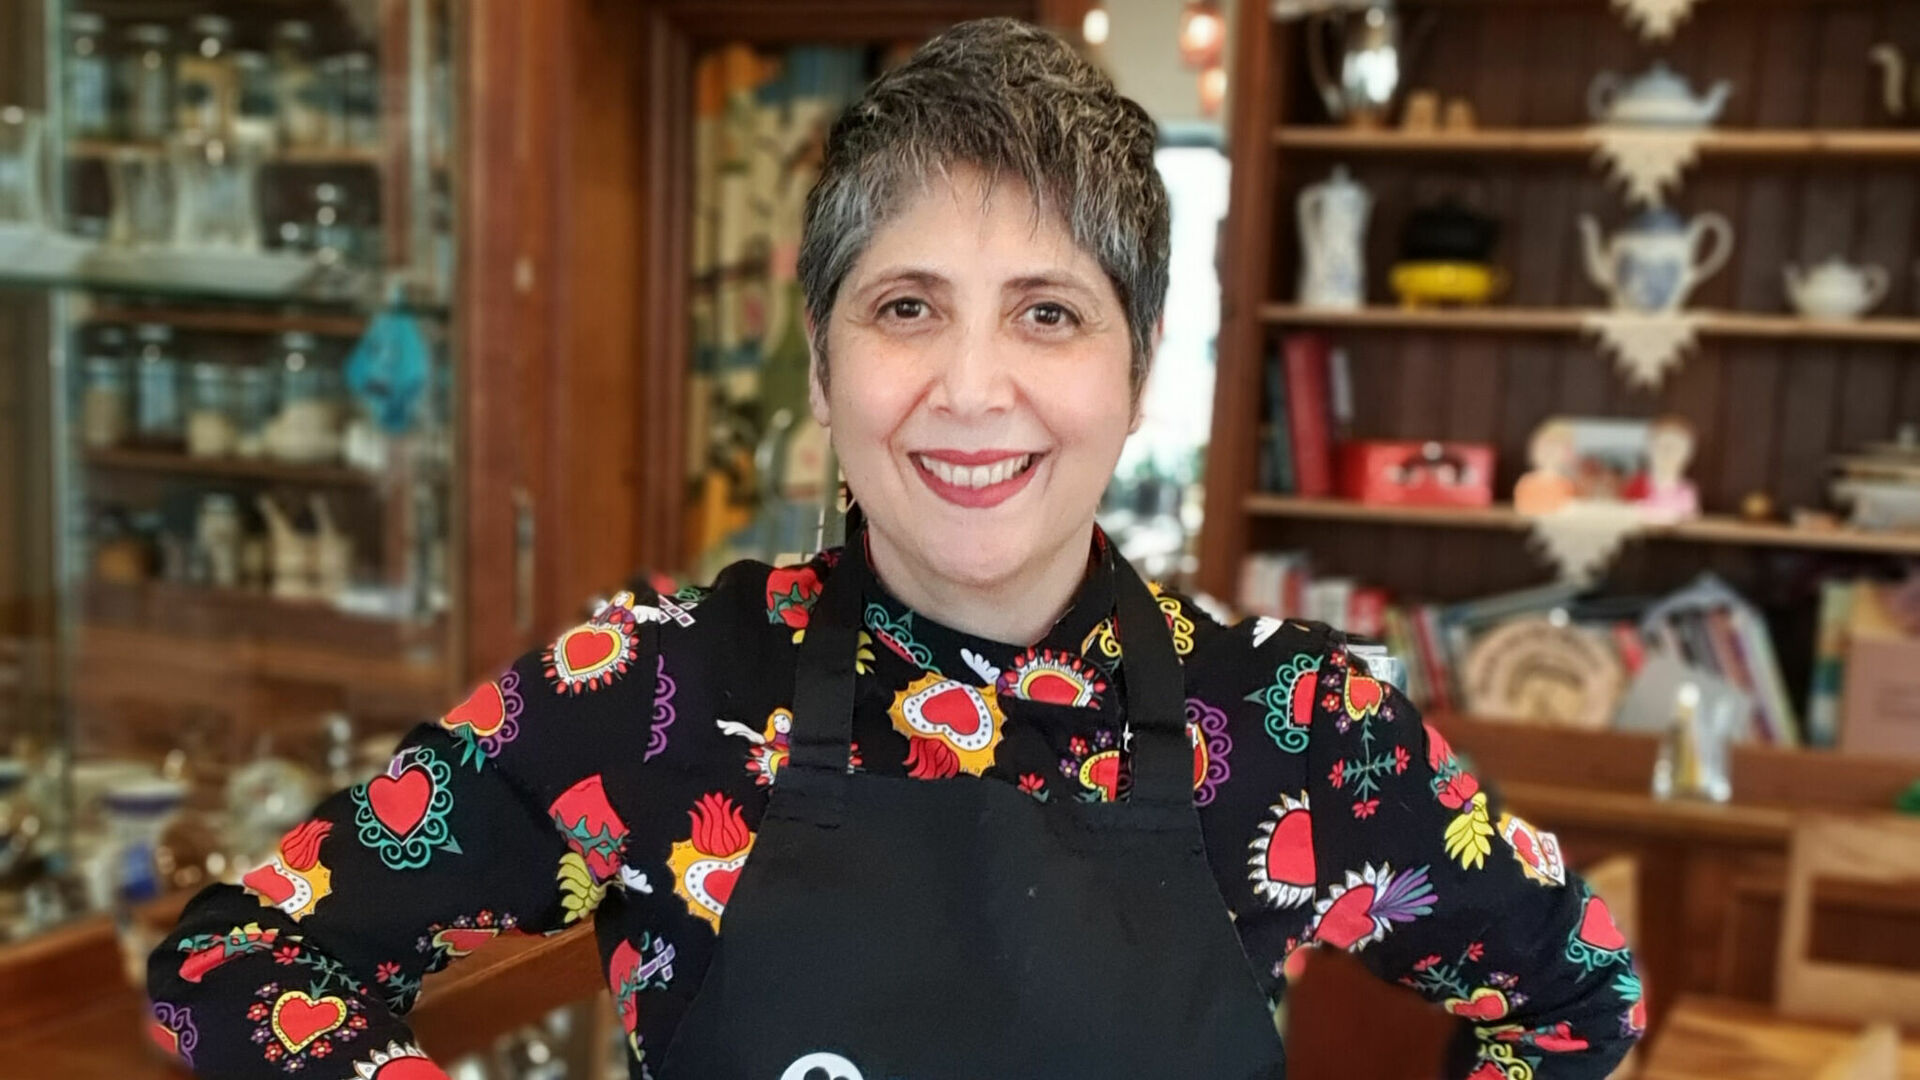 Frau mit Kochschürze lächelt in Kamera